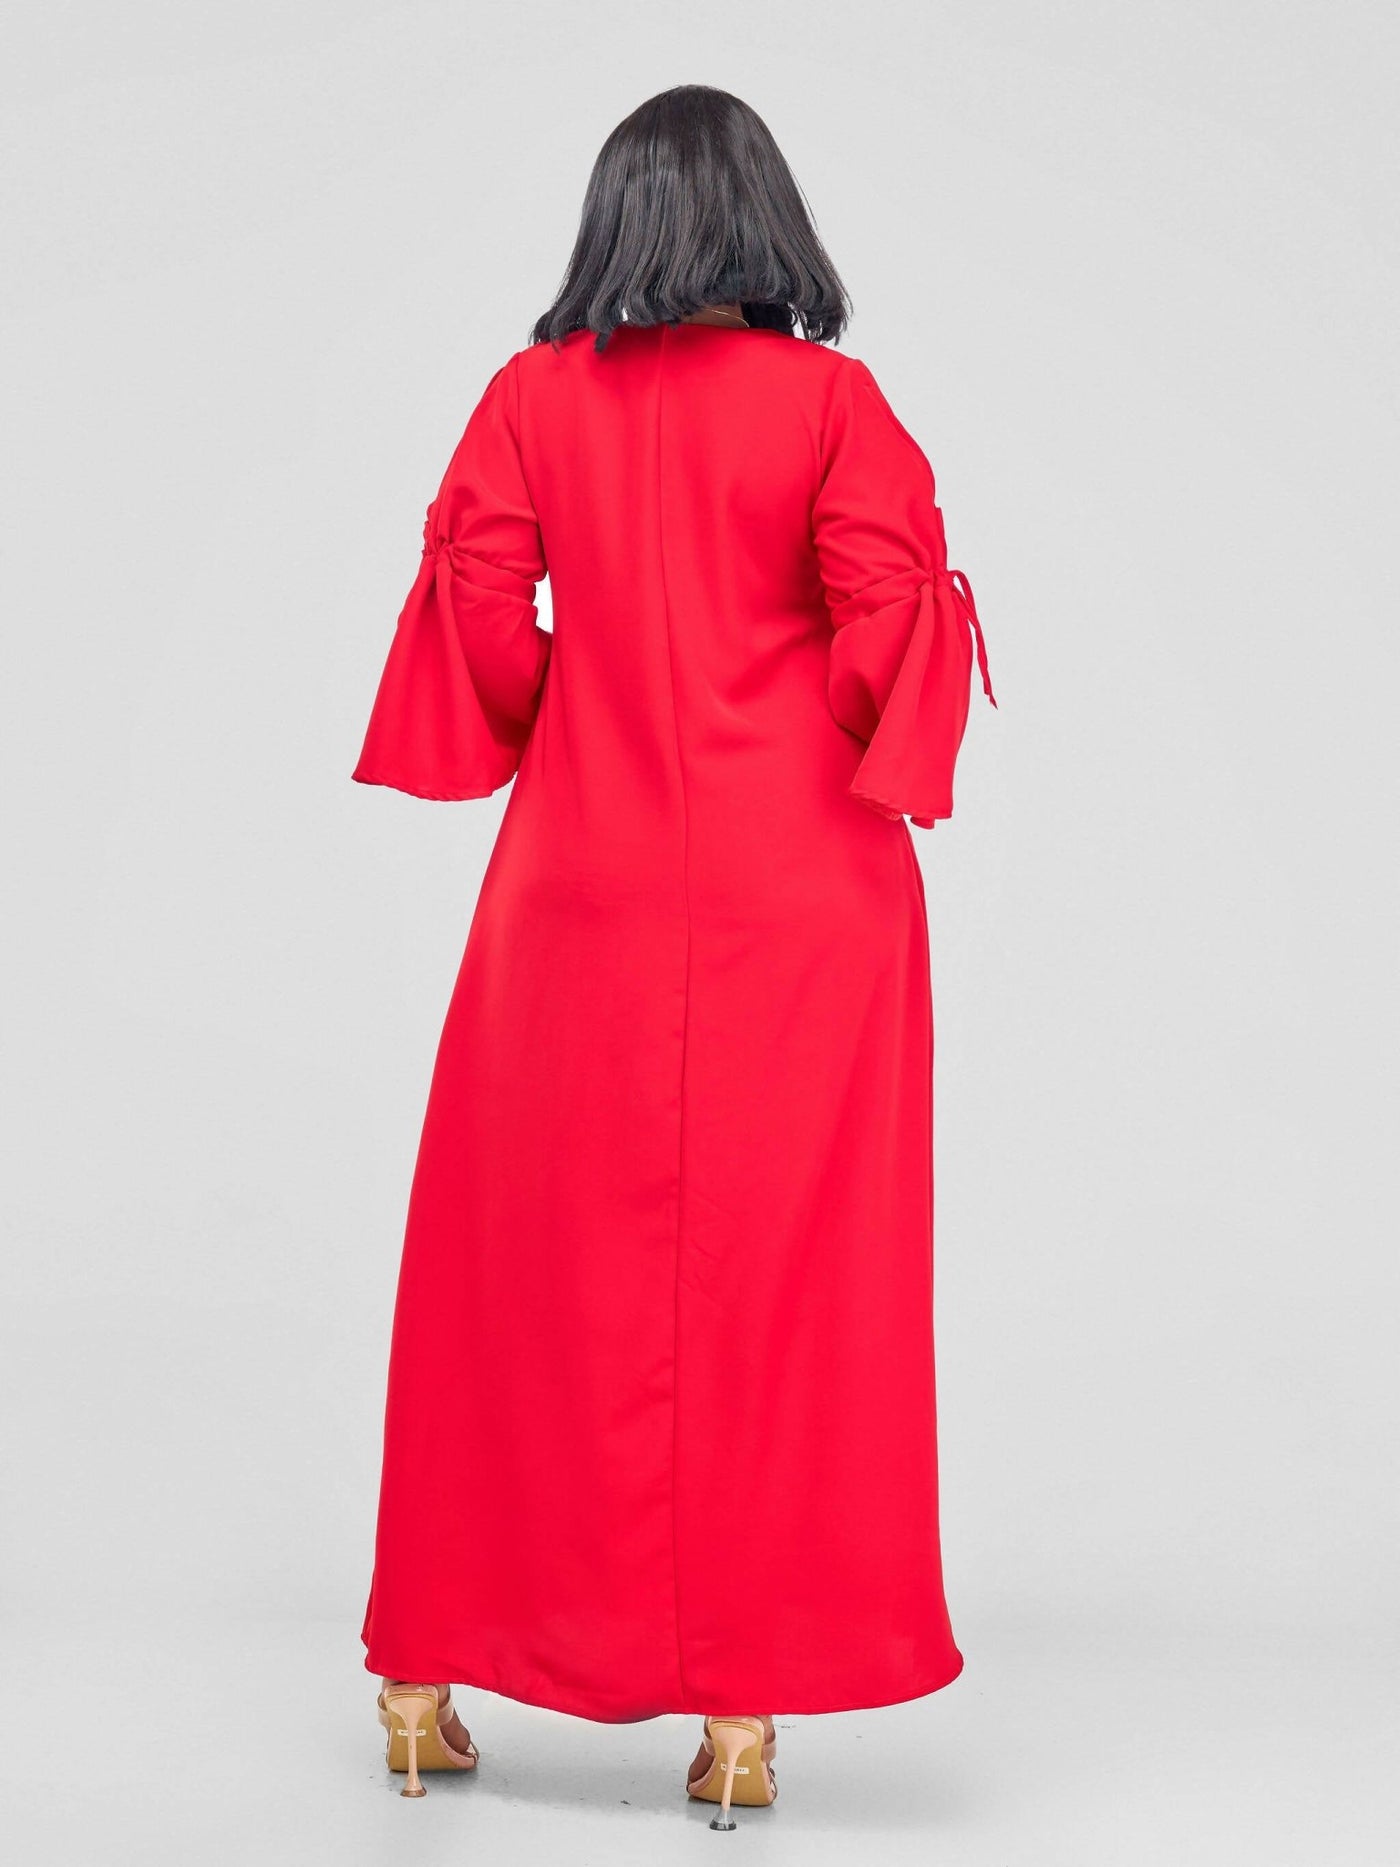 Salok Havilah Amaya Dress - Red - Shopzetu